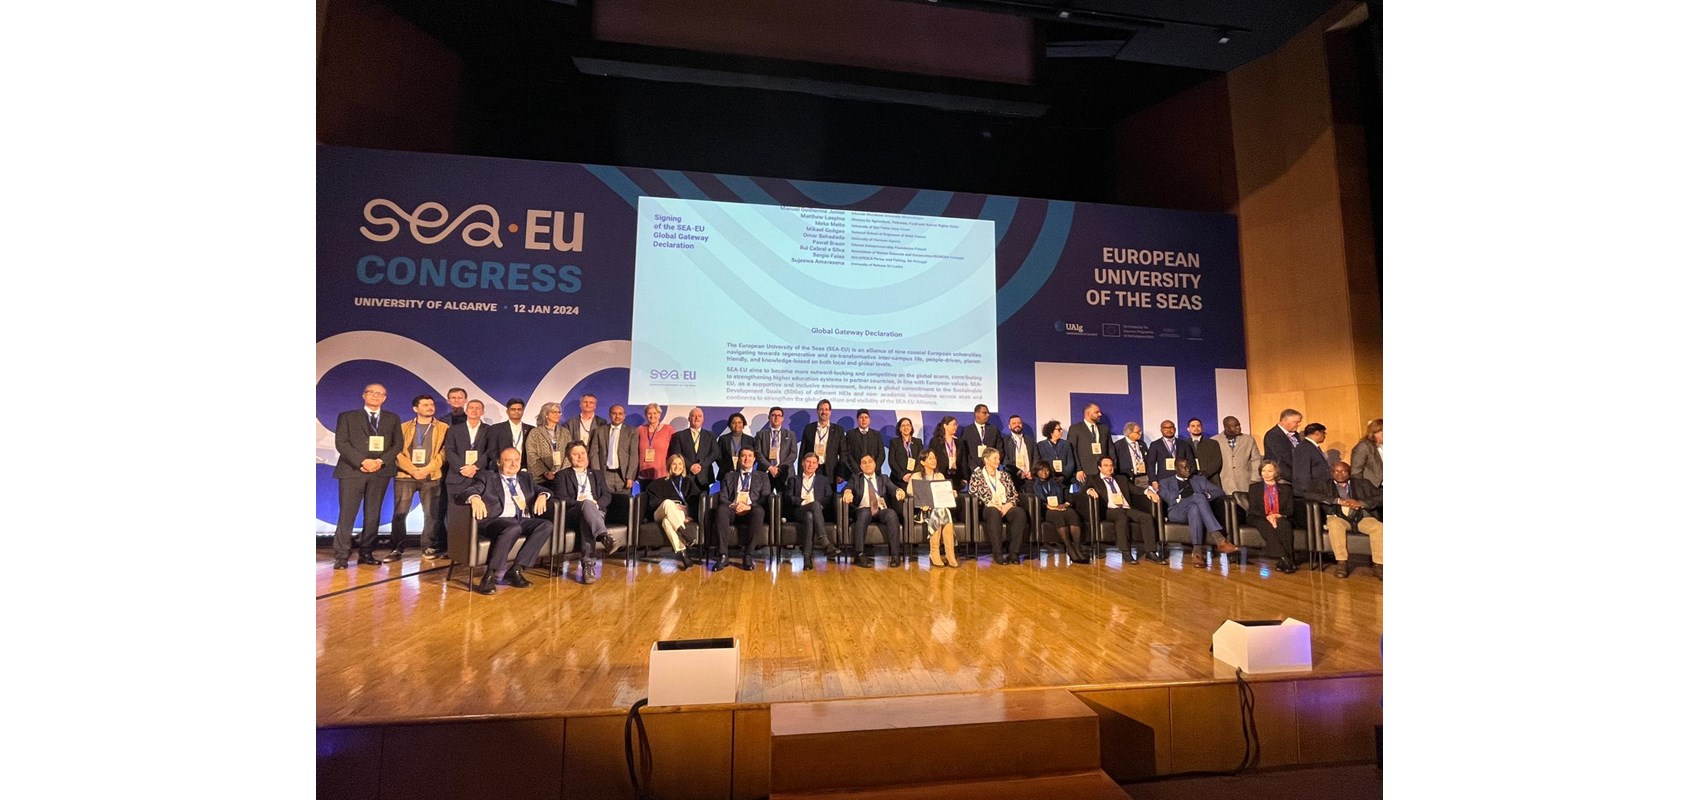 Održan SEA-EU kongres na Sveučilištu u Algarveu